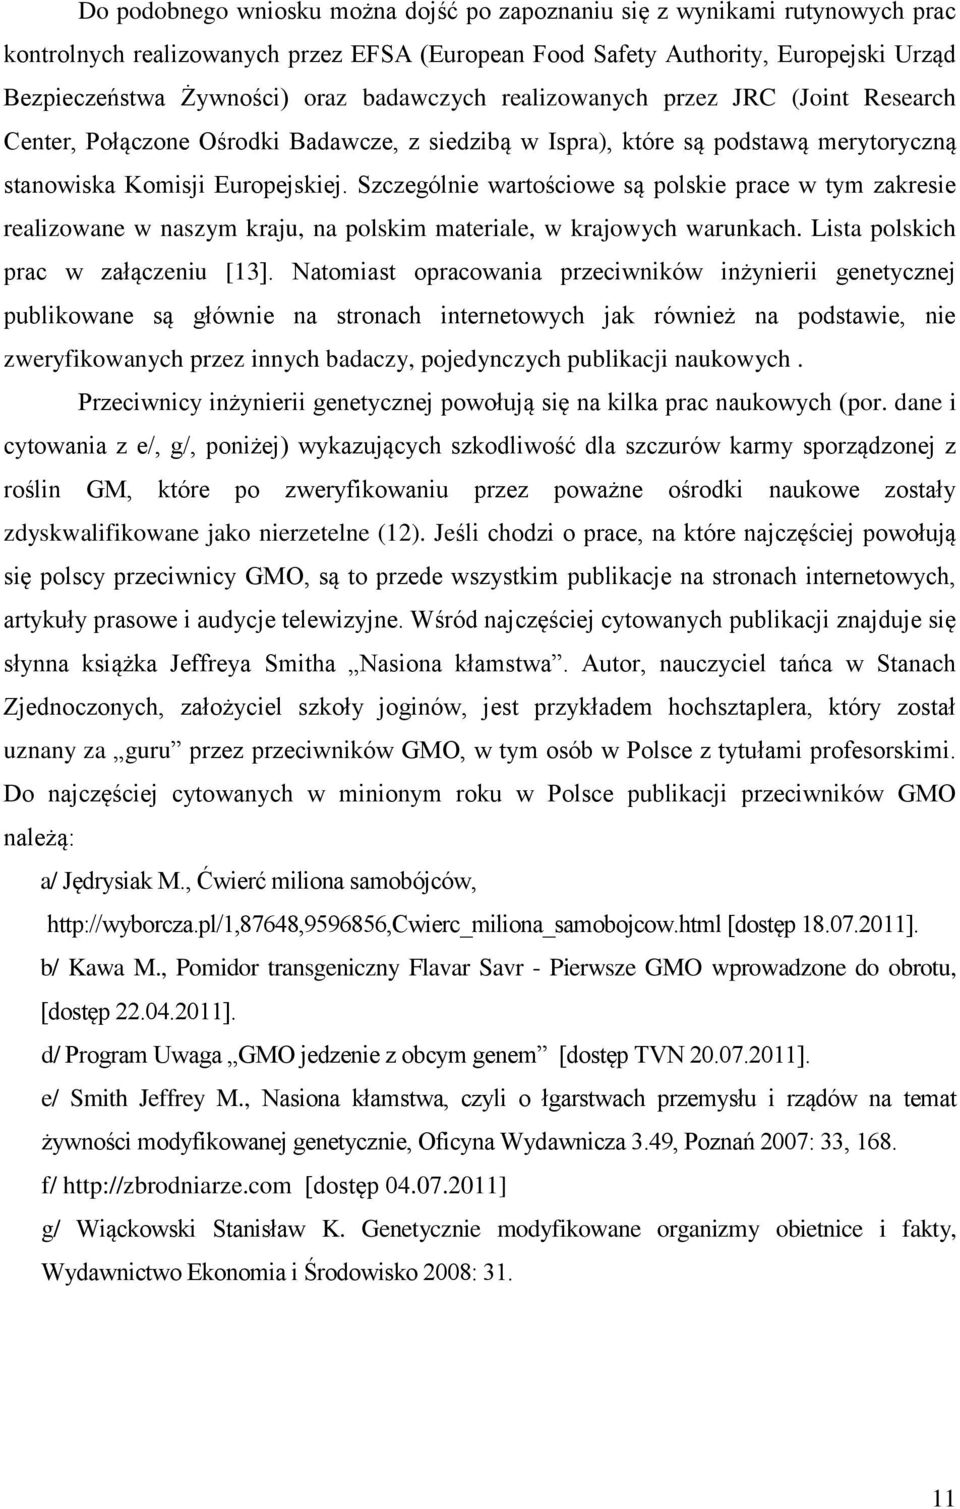 Szczególnie wartościowe są polskie prace w tym zakresie realizowane w naszym kraju, na polskim materiale, w krajowych warunkach. Lista polskich prac w załączeniu [13].